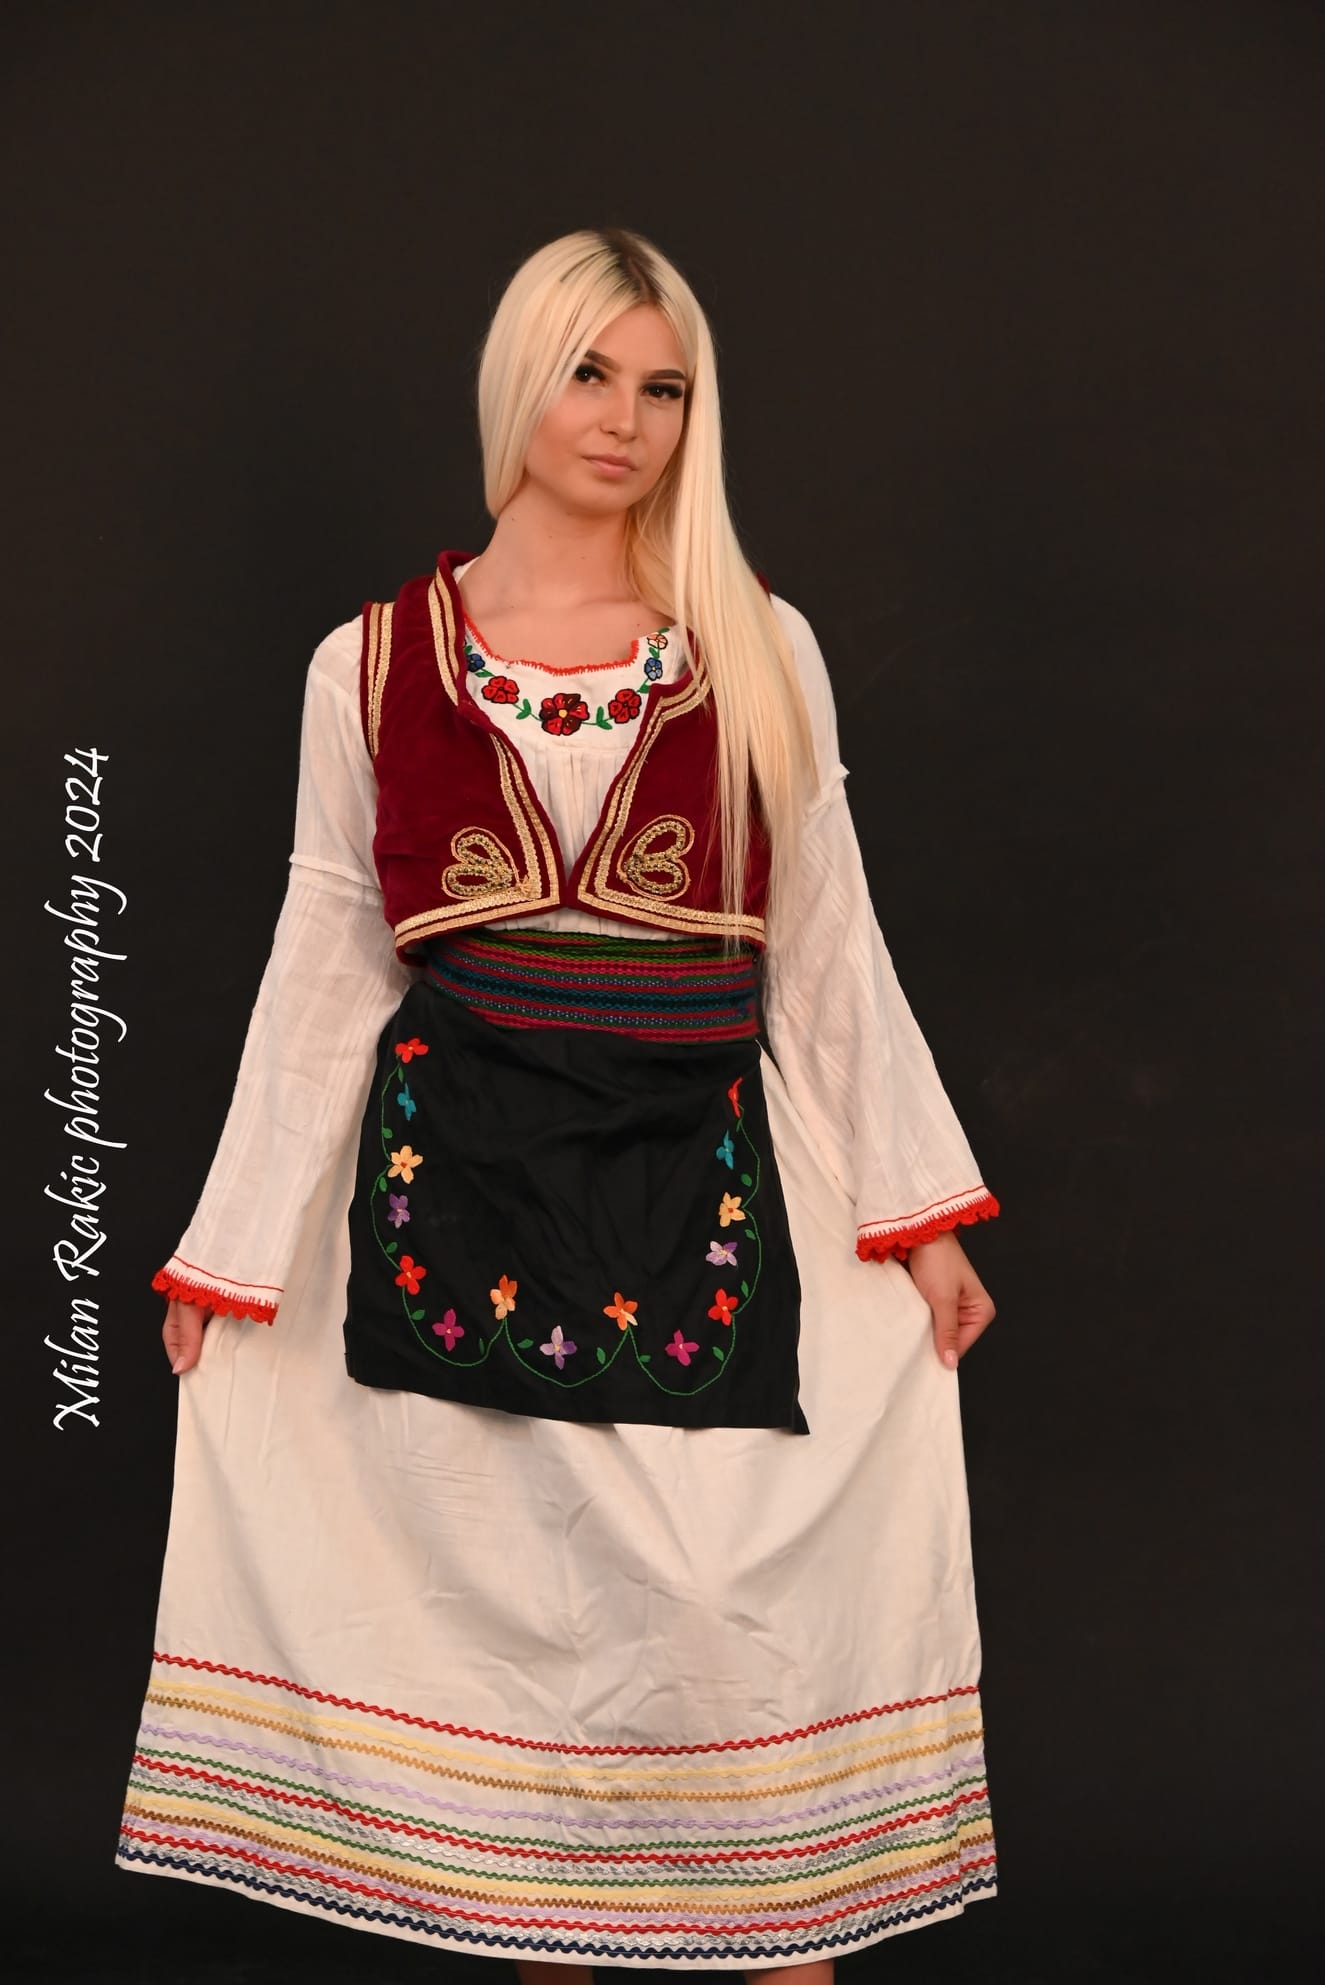 Lidija predstavlja Prokuplje i Srbiju na takmičenju lepote